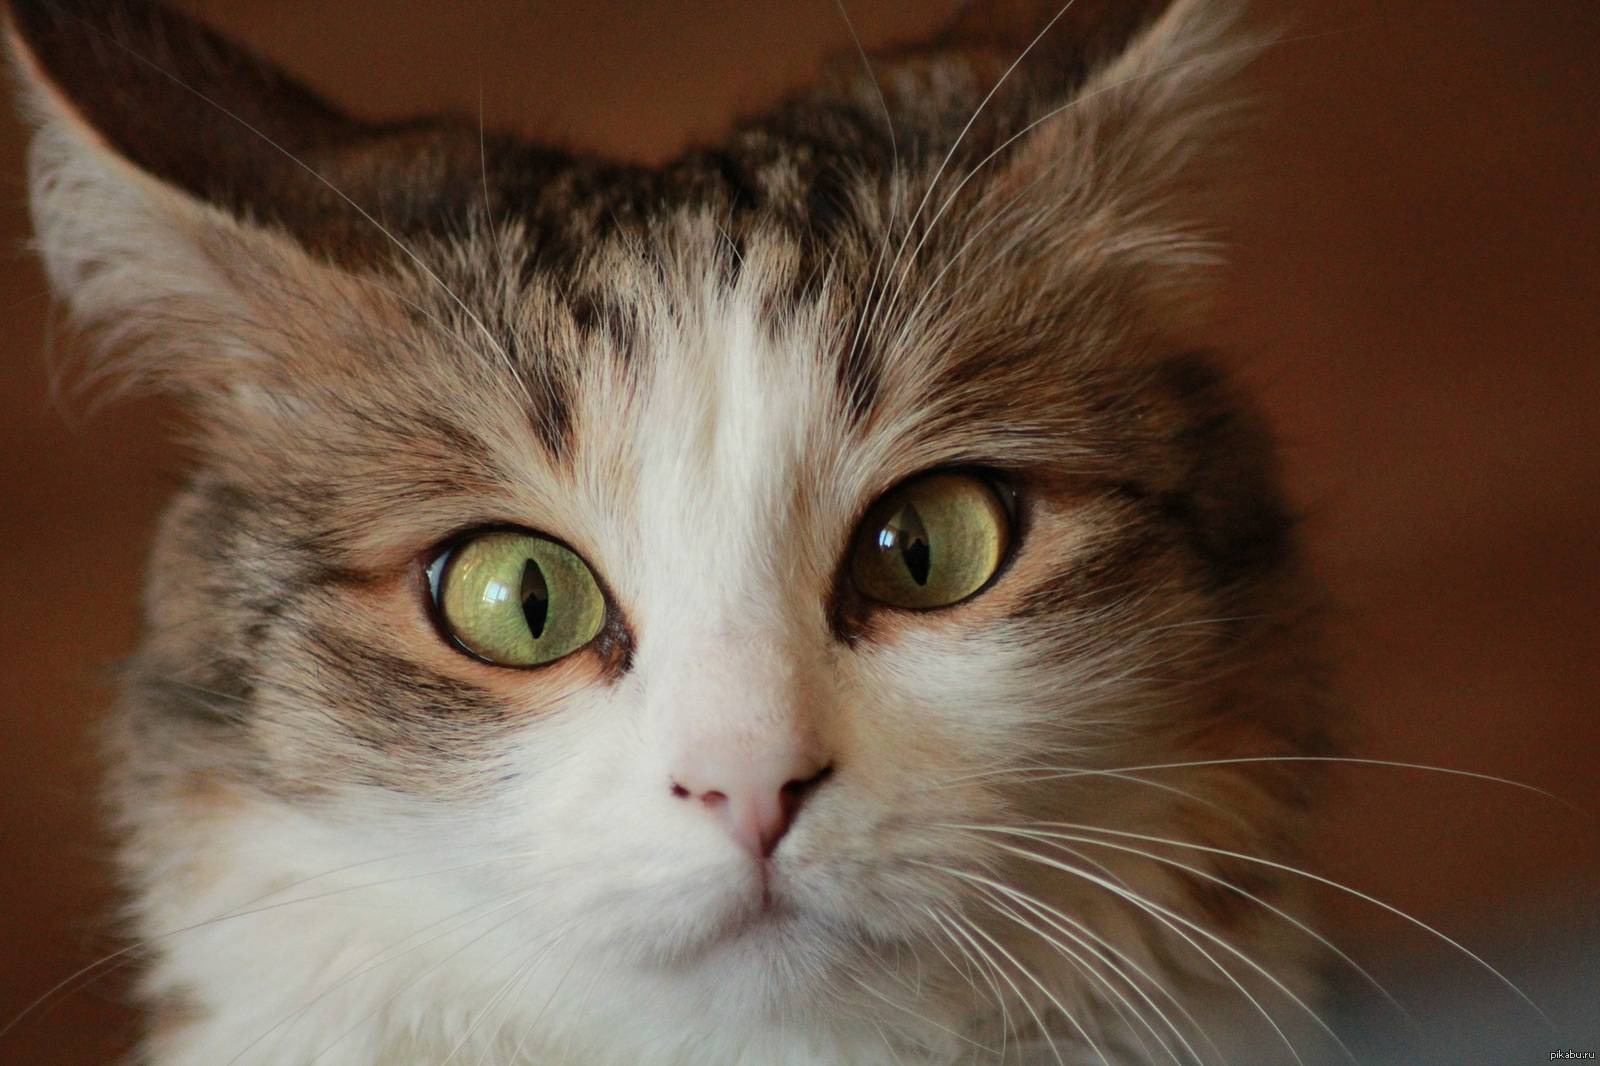 Познакомьтесь с беларусом, очаровательным косоглазым котом, который у всех крадет сердца (13 фото + 2 видео)